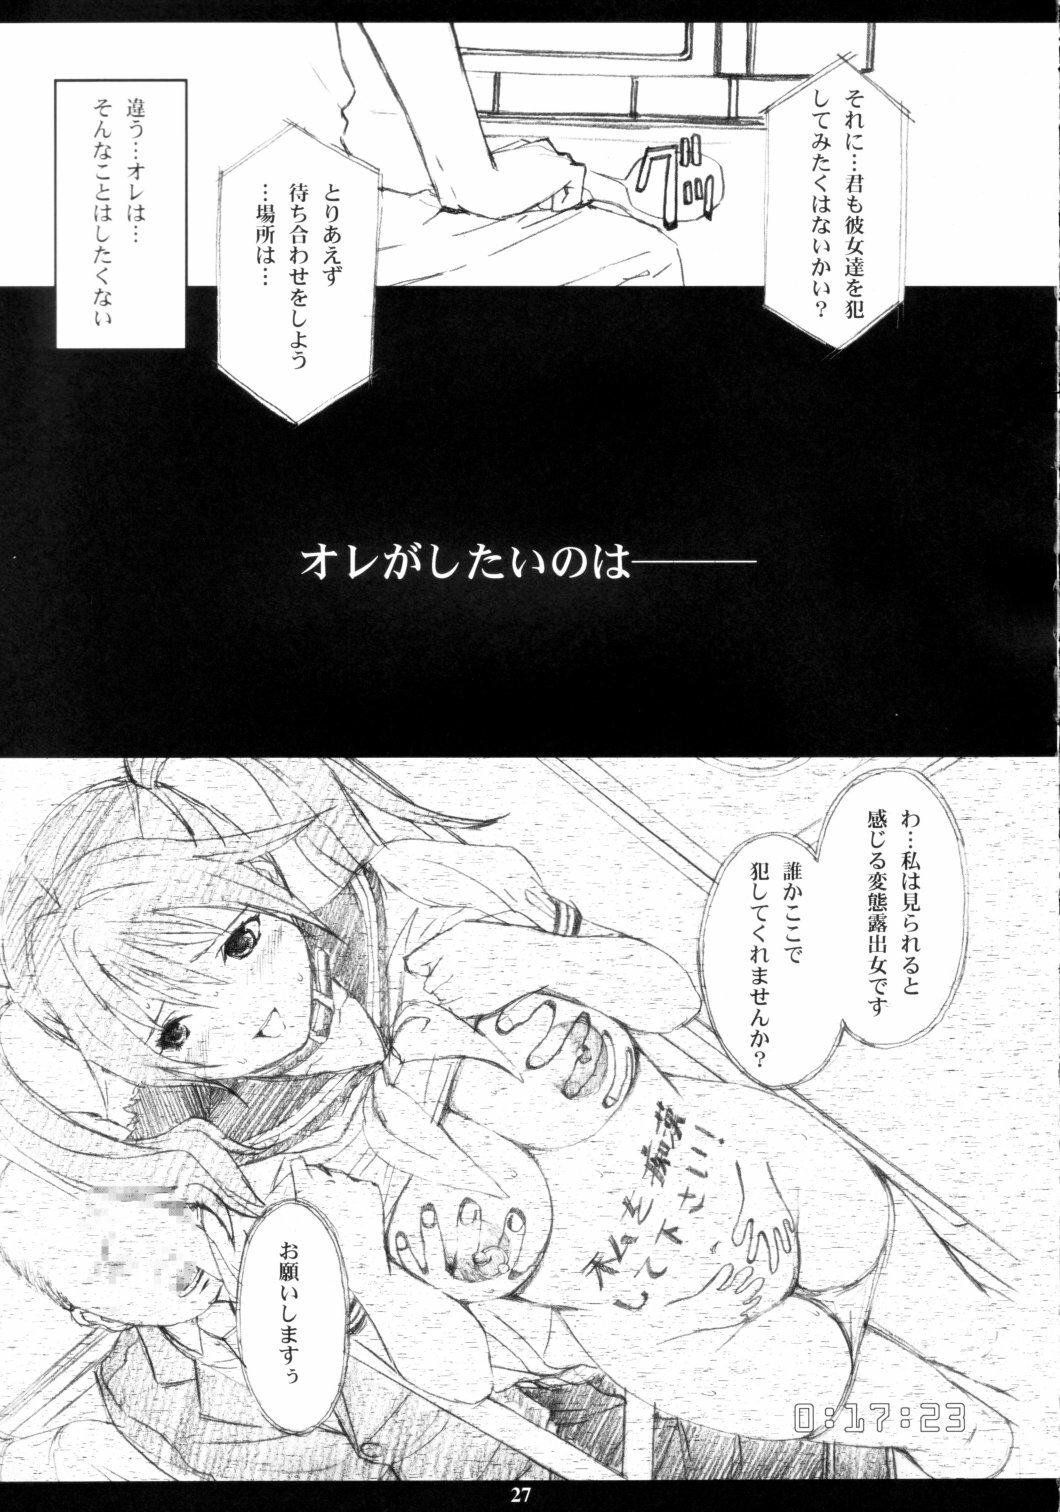 [M (Amano Ameno)] Ichigo MAX% (Ichigo 100%) [2003-02] page 26 full